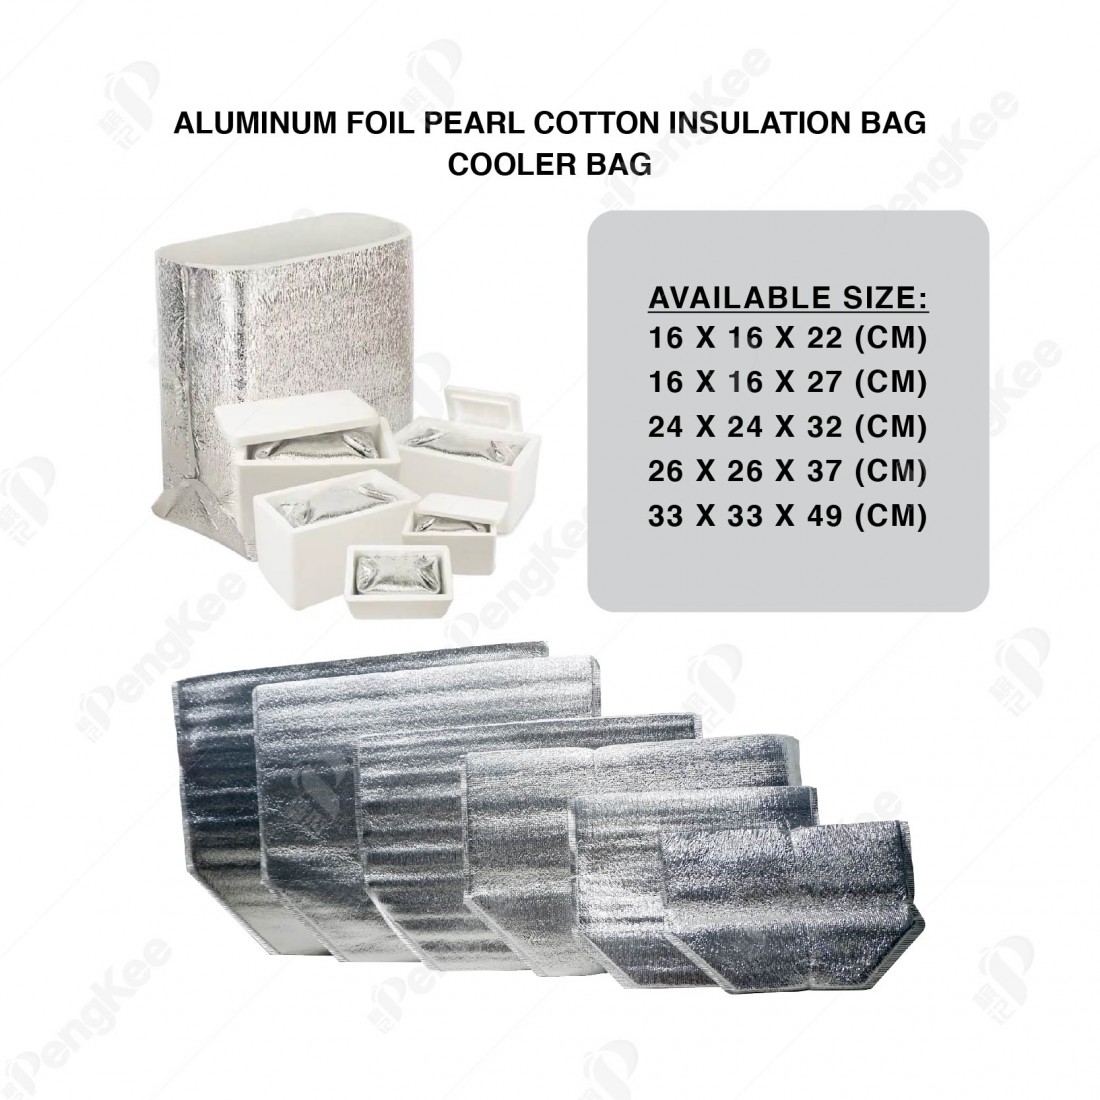 ALUMINUM FOIL PEARL COTTON INSULATION BAG (L24 * W24 * H32CM +3MM) 铝箱珍珠保温袋 (20'S)